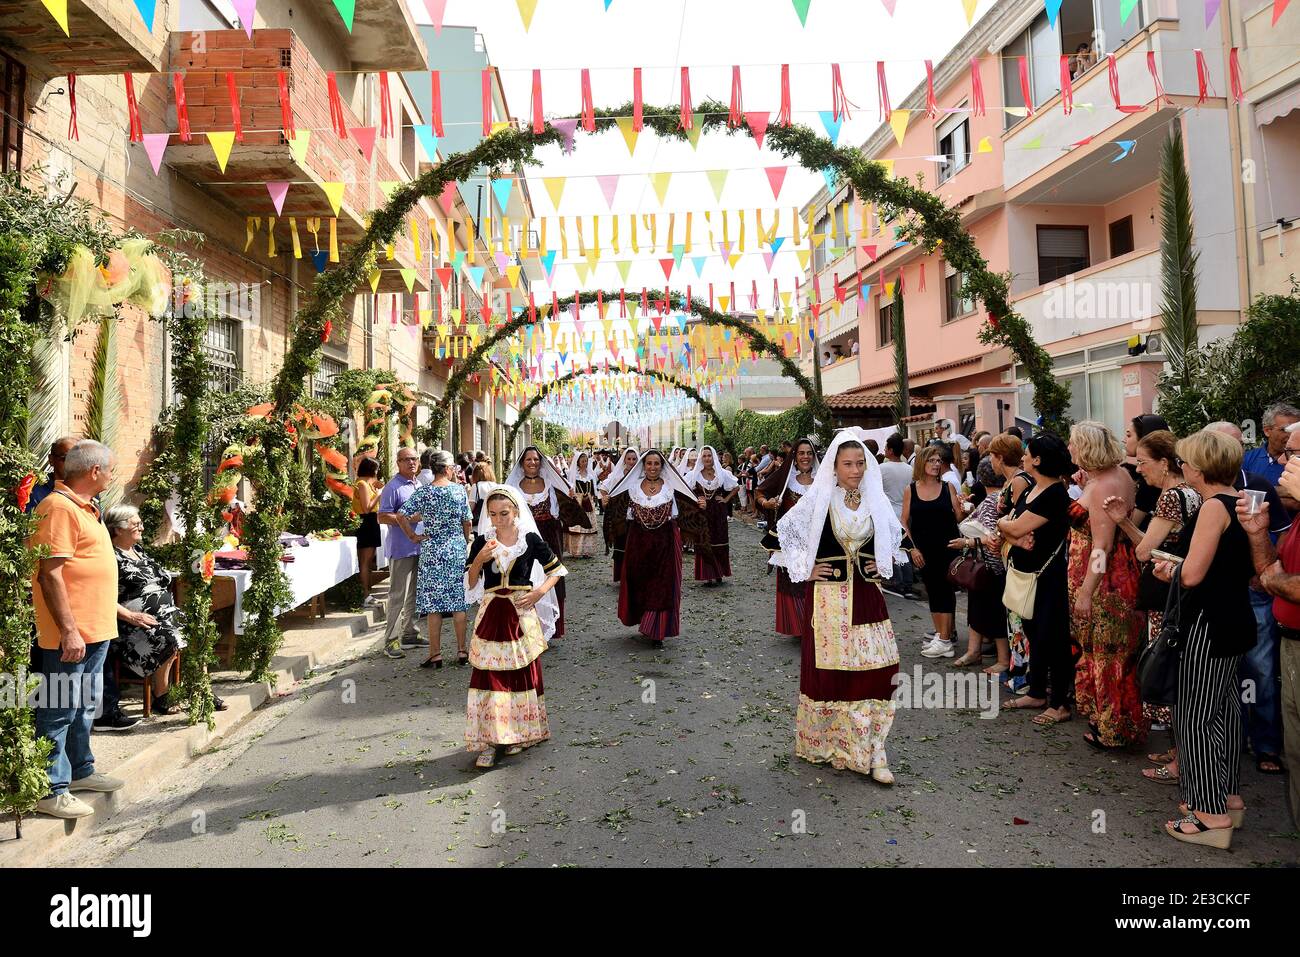 Italie, Sardaigne, Selargius: Fête traditionnelle à l'occasion de la 58e édition du Sposalizio Selargino, mariage traditionnel, . Parade à travers t Banque D'Images